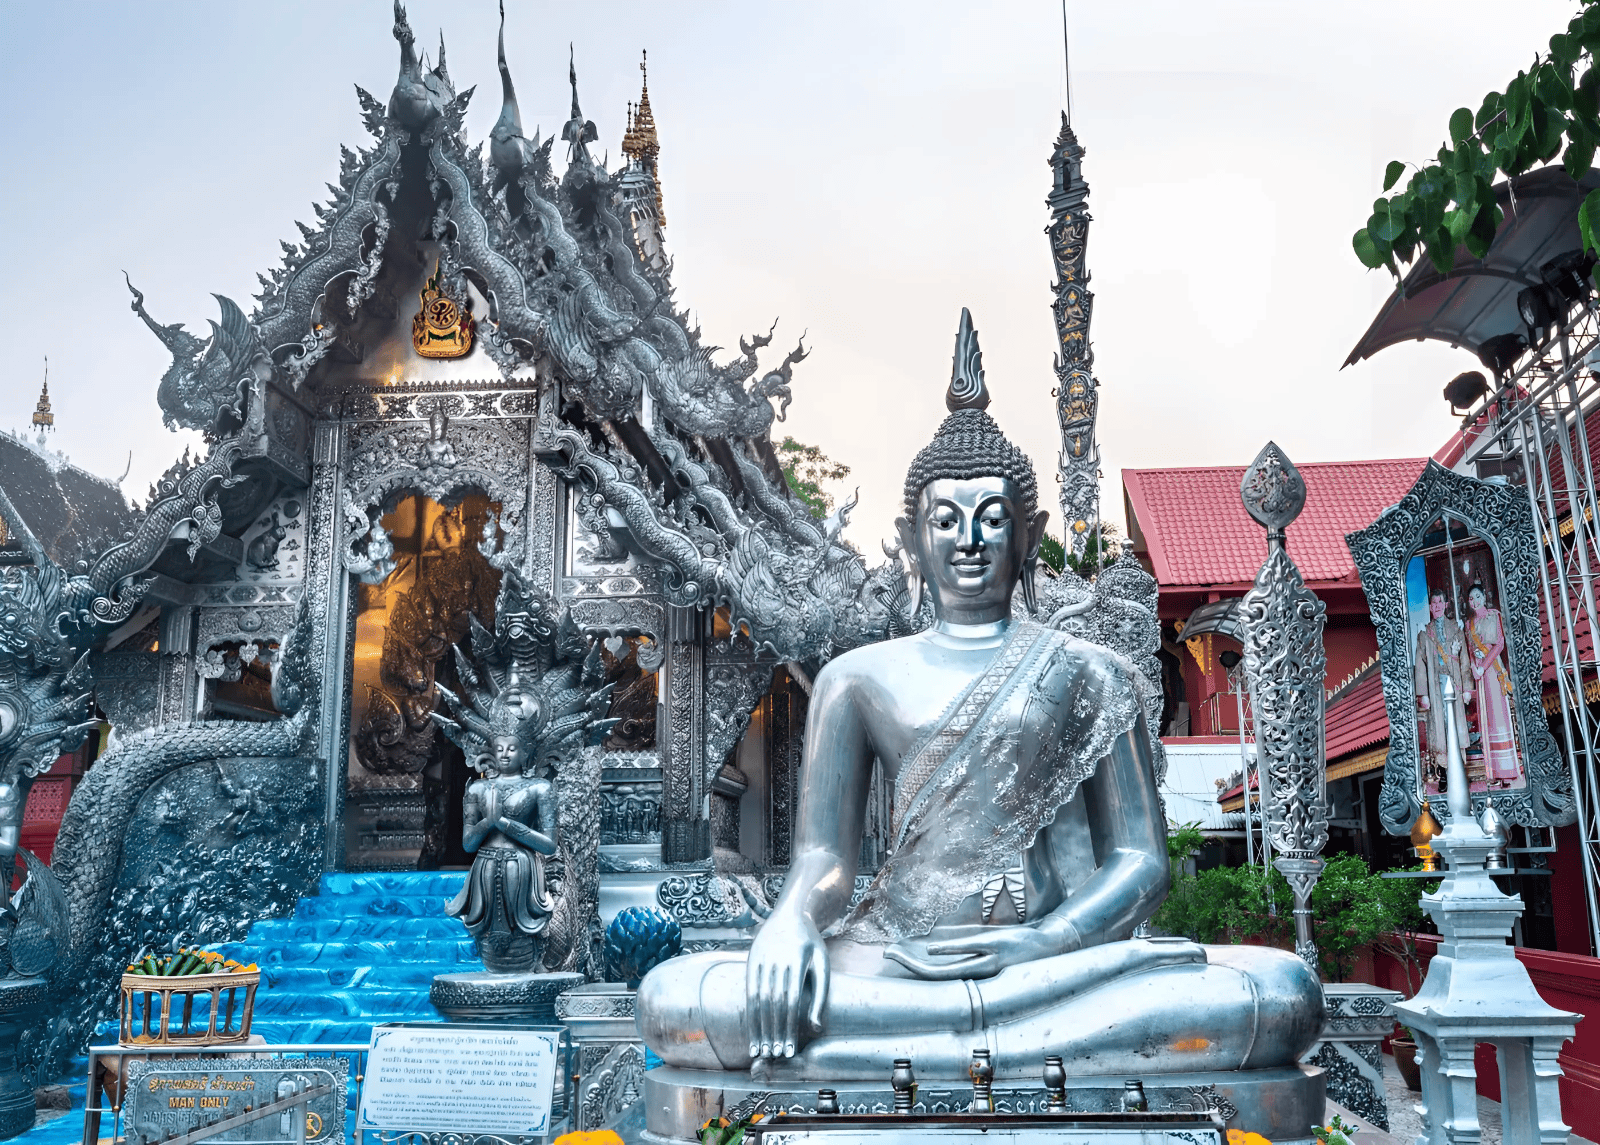 Tour du lịch tự túc Chiang Mai 4 ngày 3 đêm từ Hà Nội